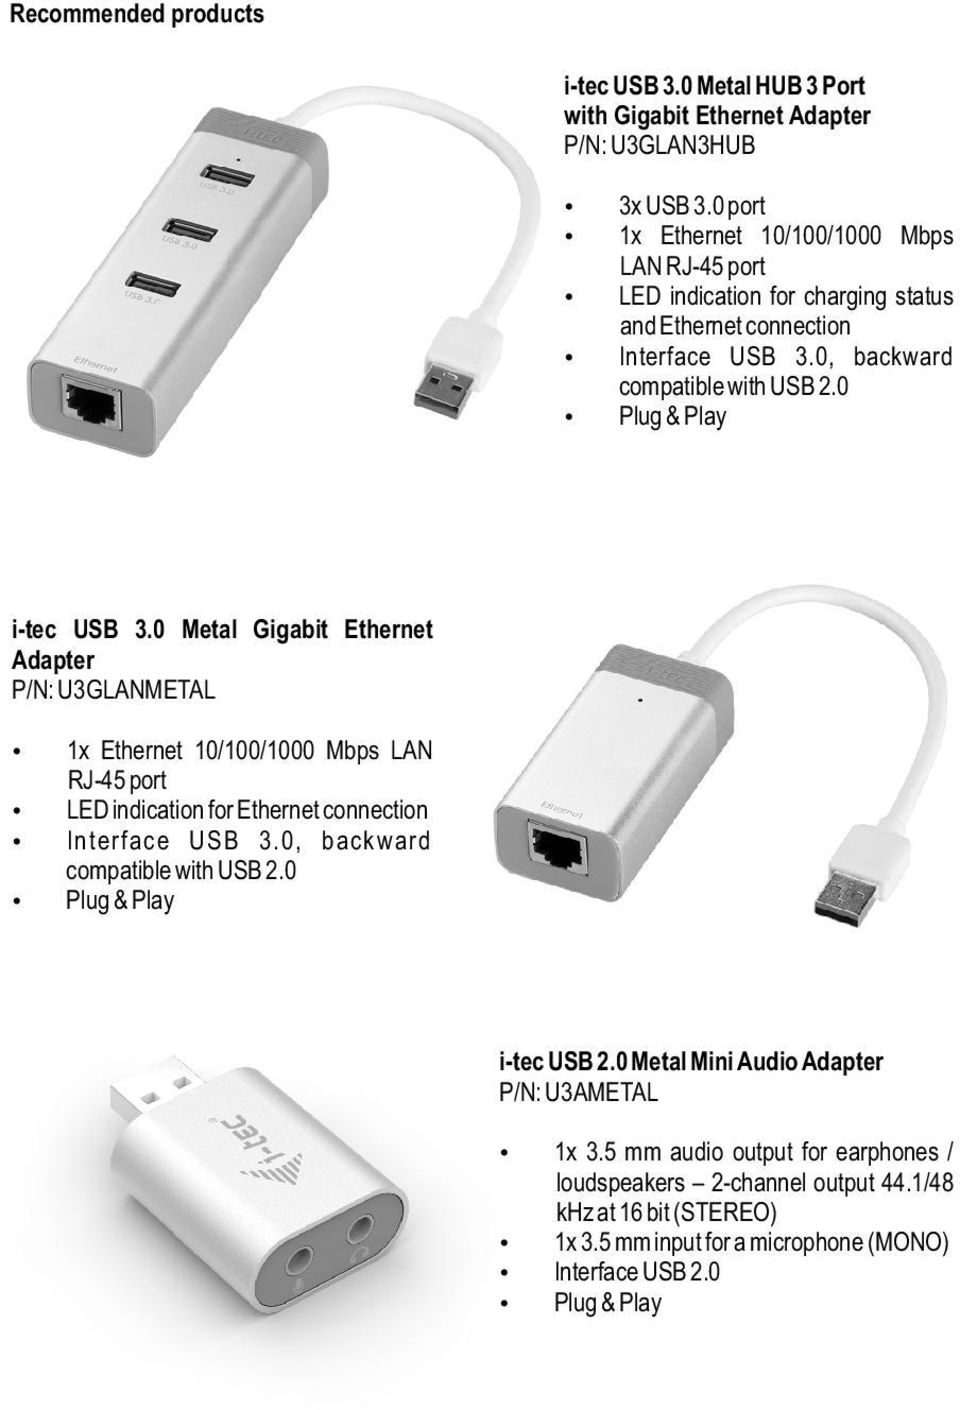 0 Plug & Play i-tec USB 3.0 Metal Gigabit Ethernet Adapter P/N: U3GLANMETAL 1x Ethernet 10/100/1000 Mbps LAN RJ-45 port LED indication for Ethernet connection Interface USB 3.